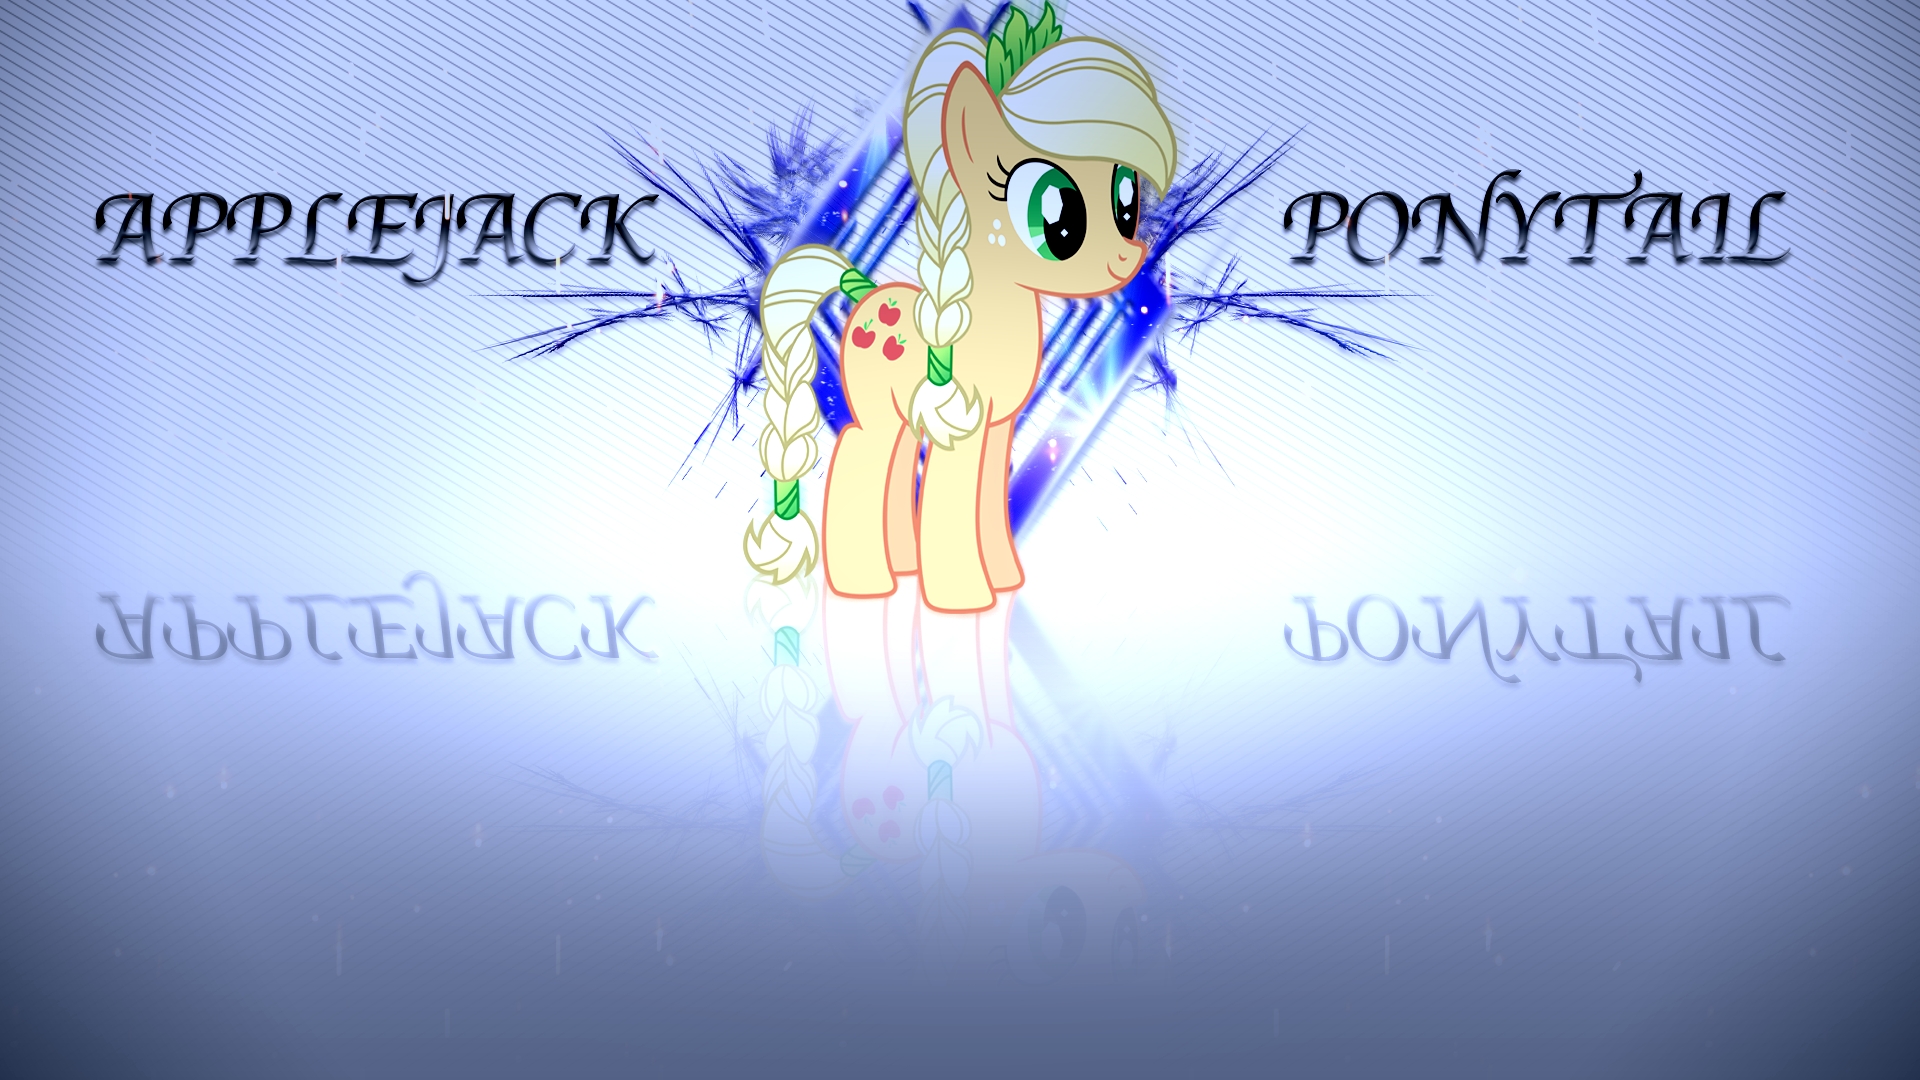 Applejack ponytail by BronyYAY123 and teiptr